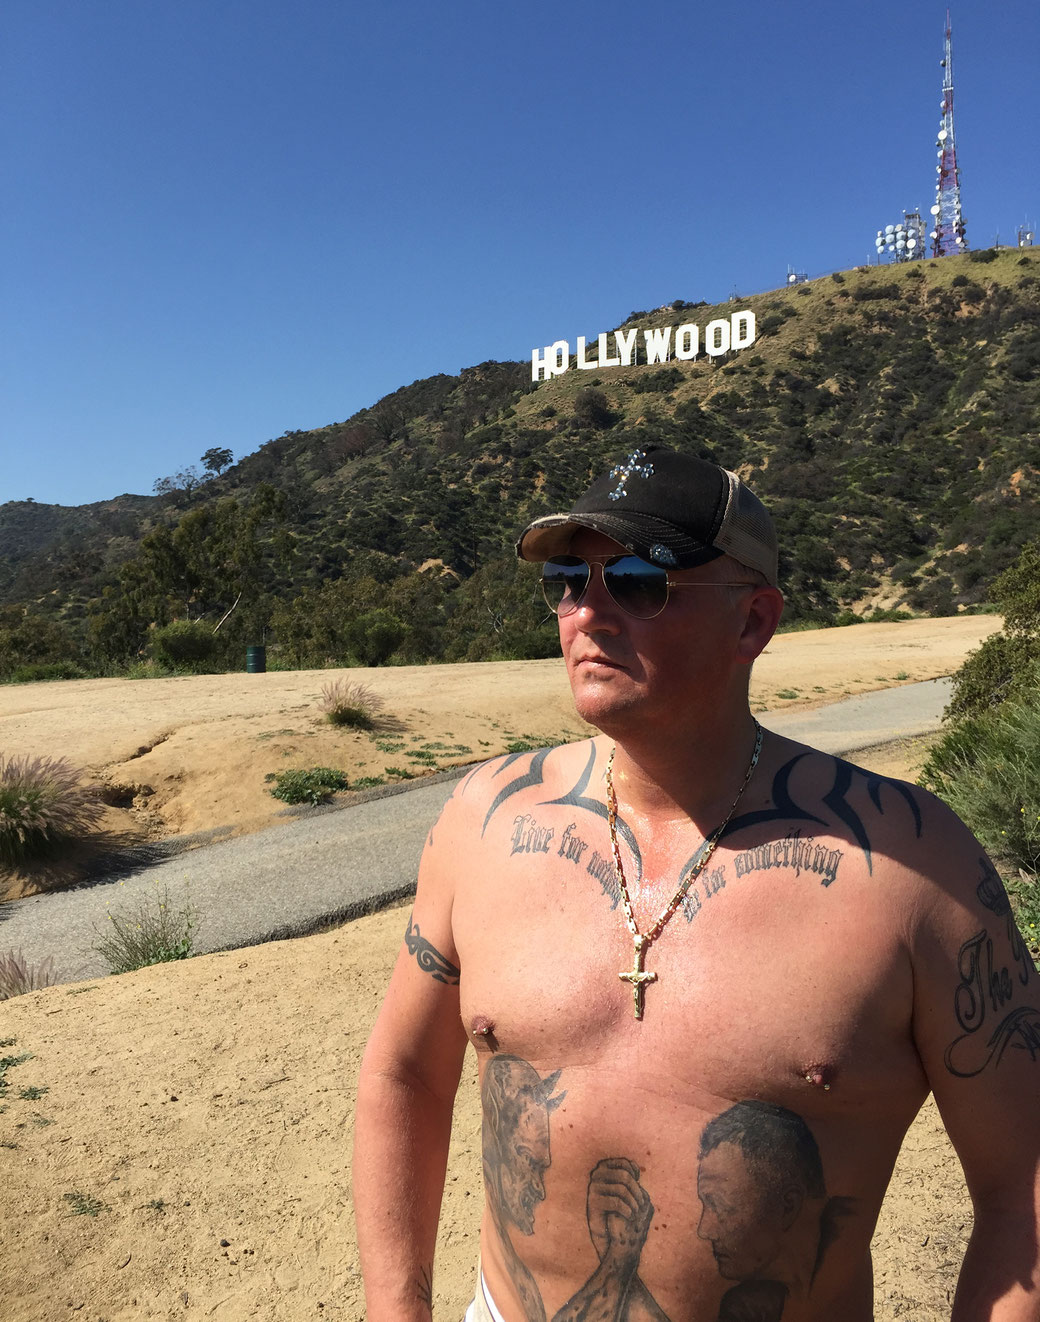 Hier sehen Sie Prinz Alexander von Anhalt mit nacktem Oberkörper und seinen Tattoos vor dem berühmten Hollywood Sign in Los Angeles - Kalifornien